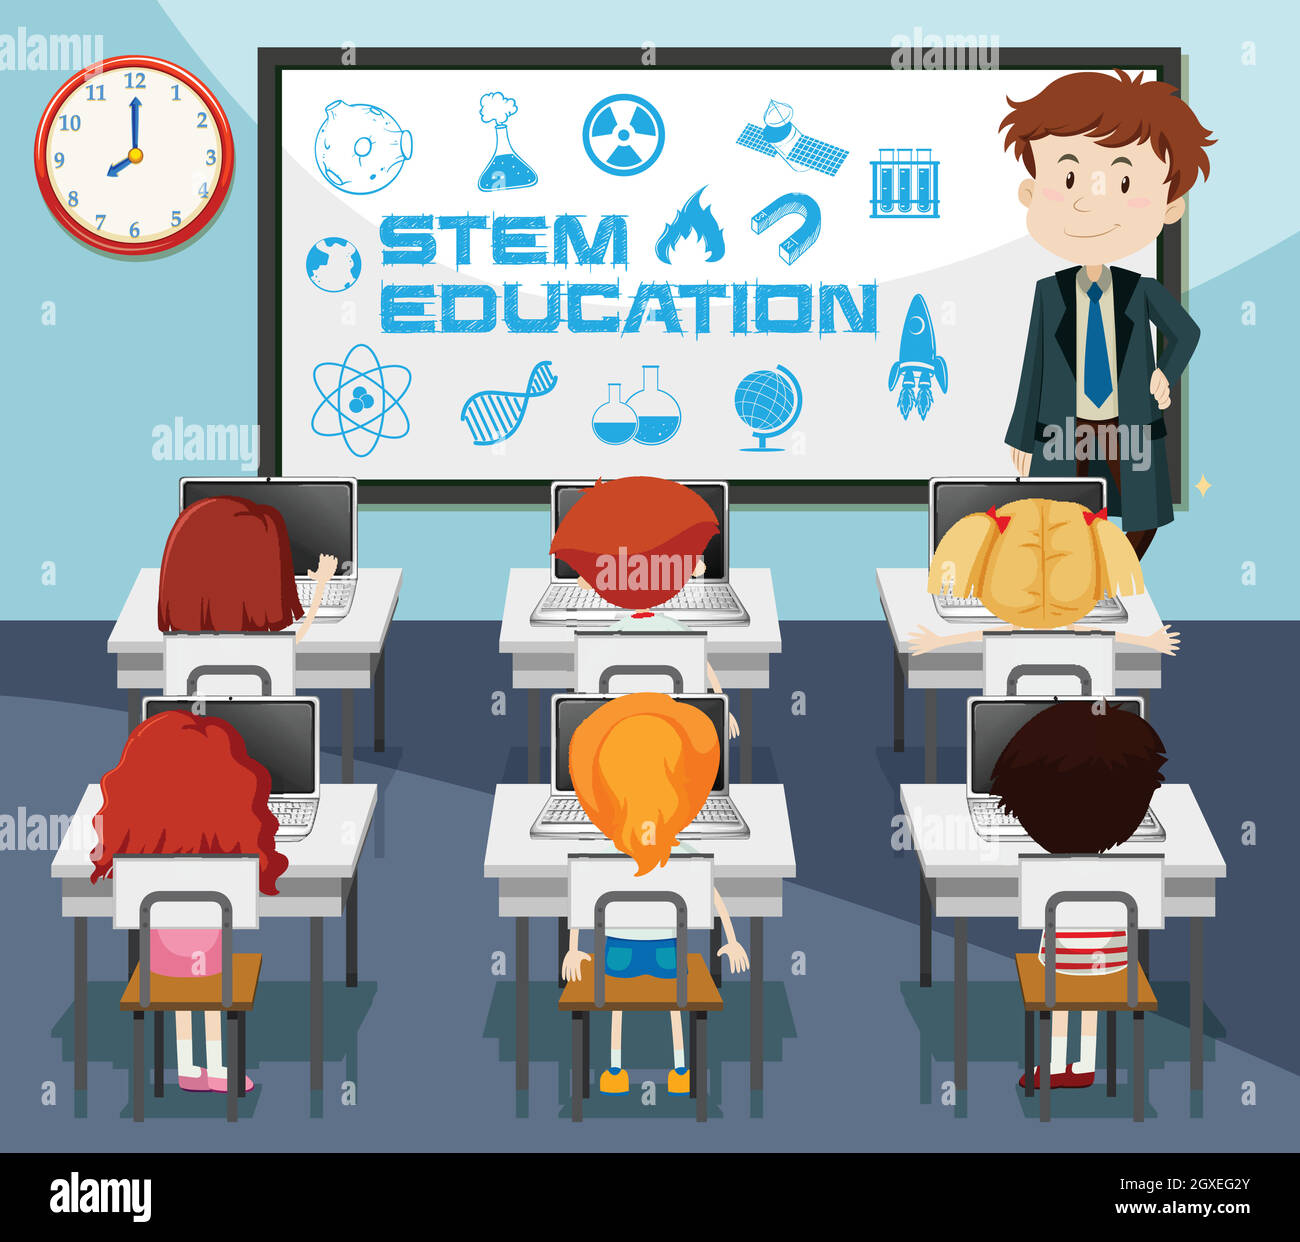 Scène de l'éducation STEM en classe Illustration de Vecteur